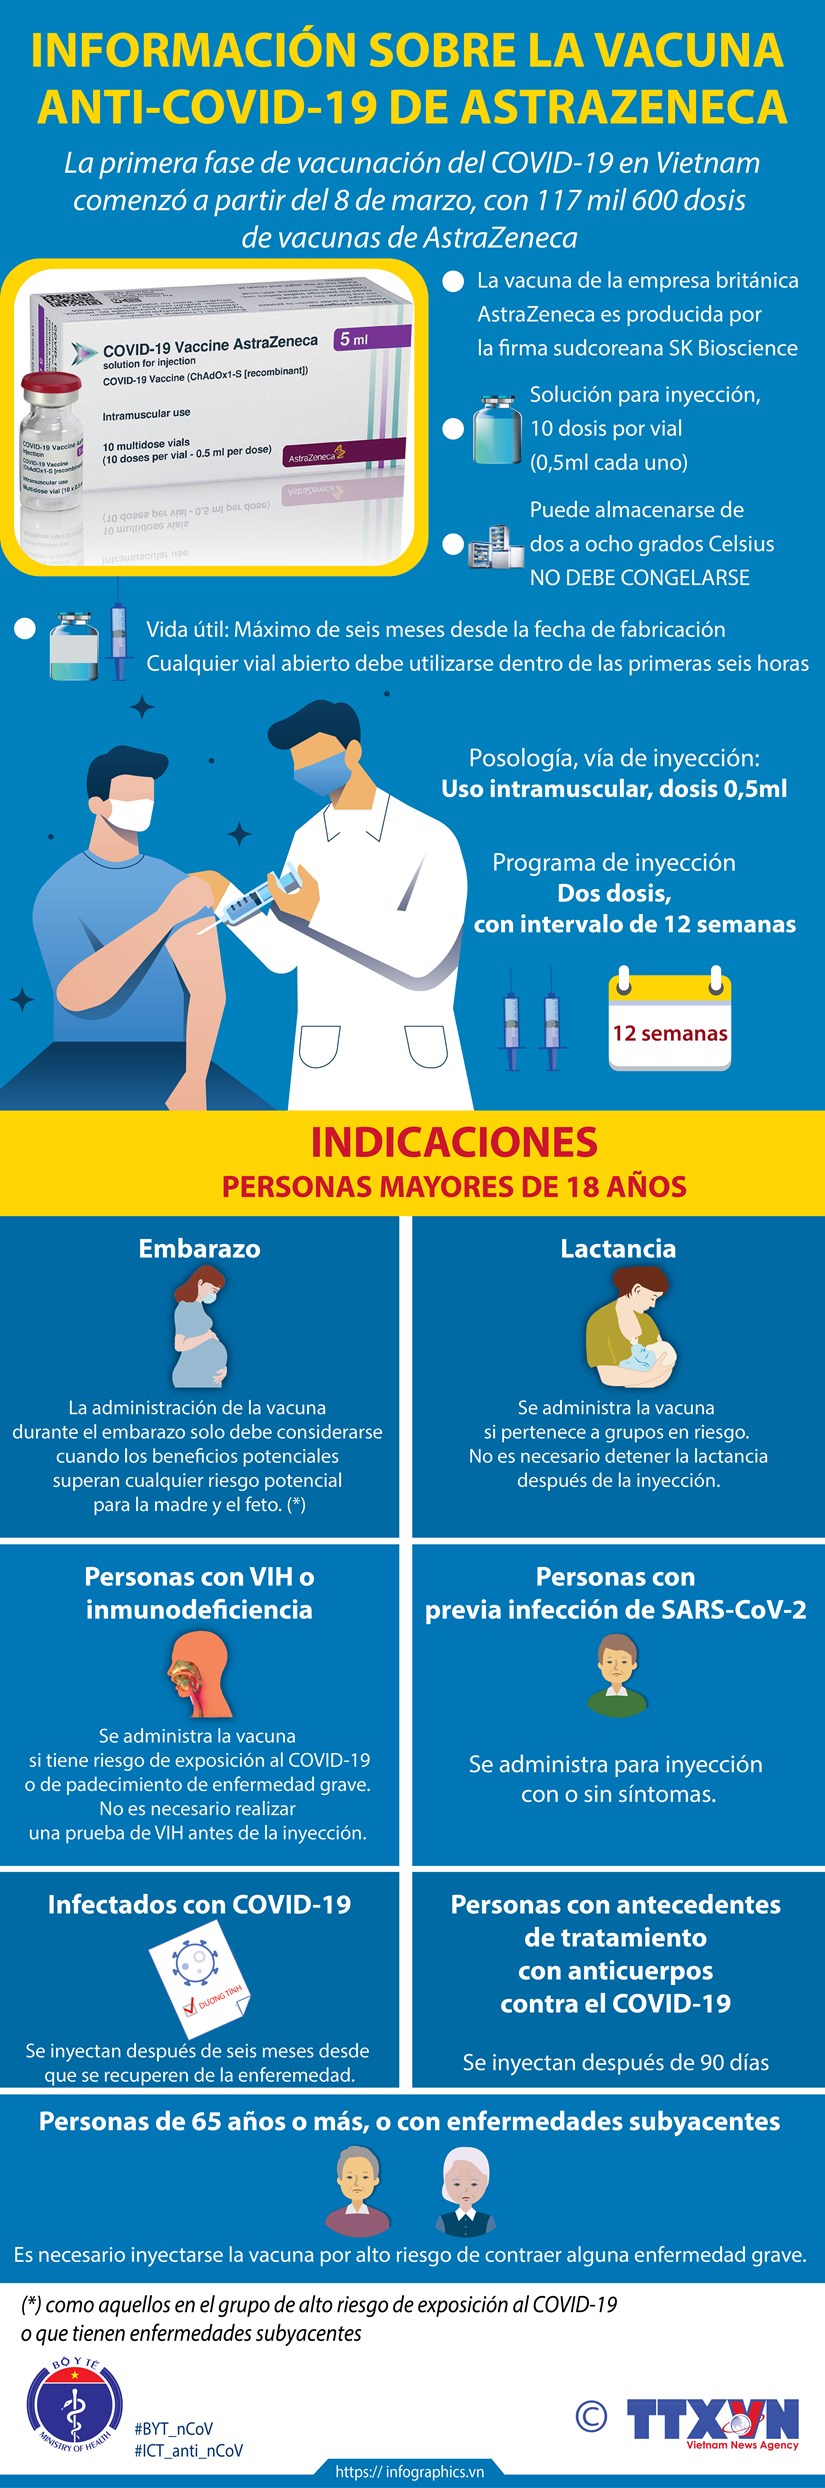 Informacion sobre la vacuna anti-COVID-19 de AstraZeneca hinh anh 1